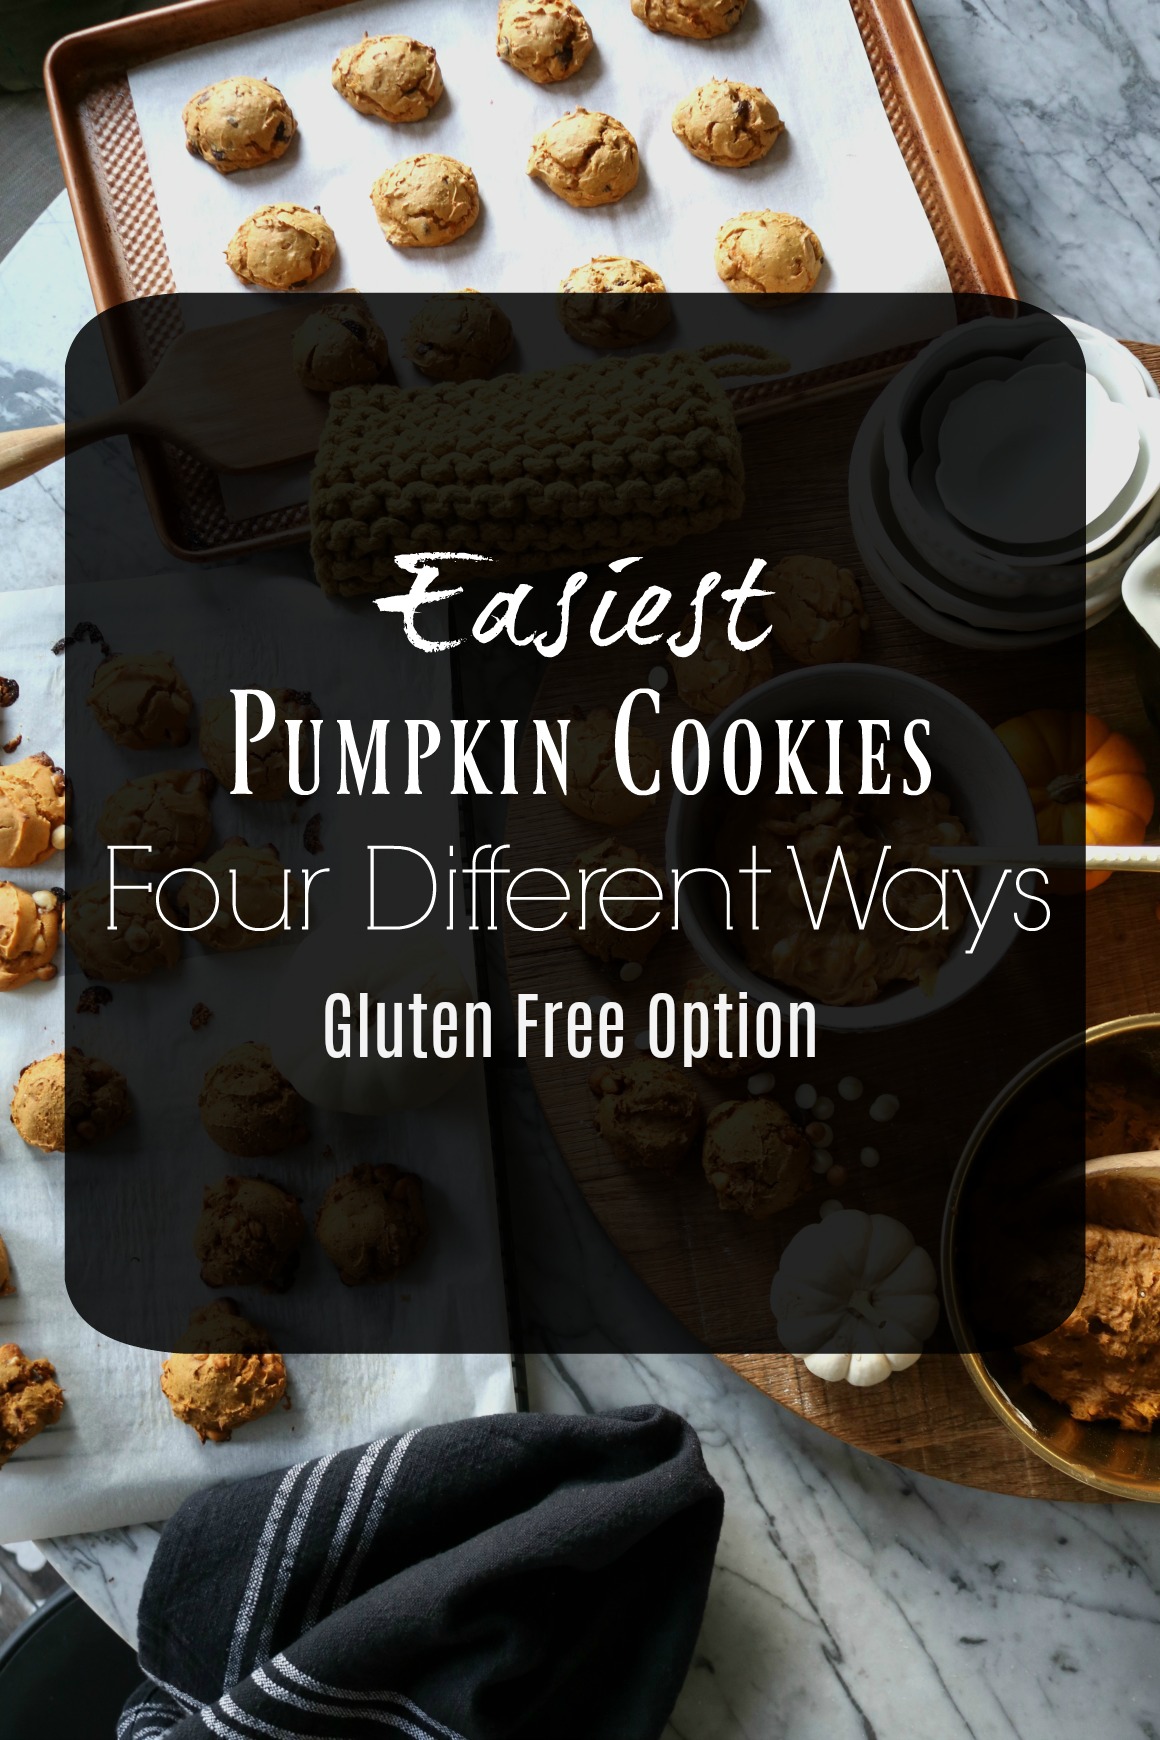 Easiest Pumpkin Cookies and Low Calorie!